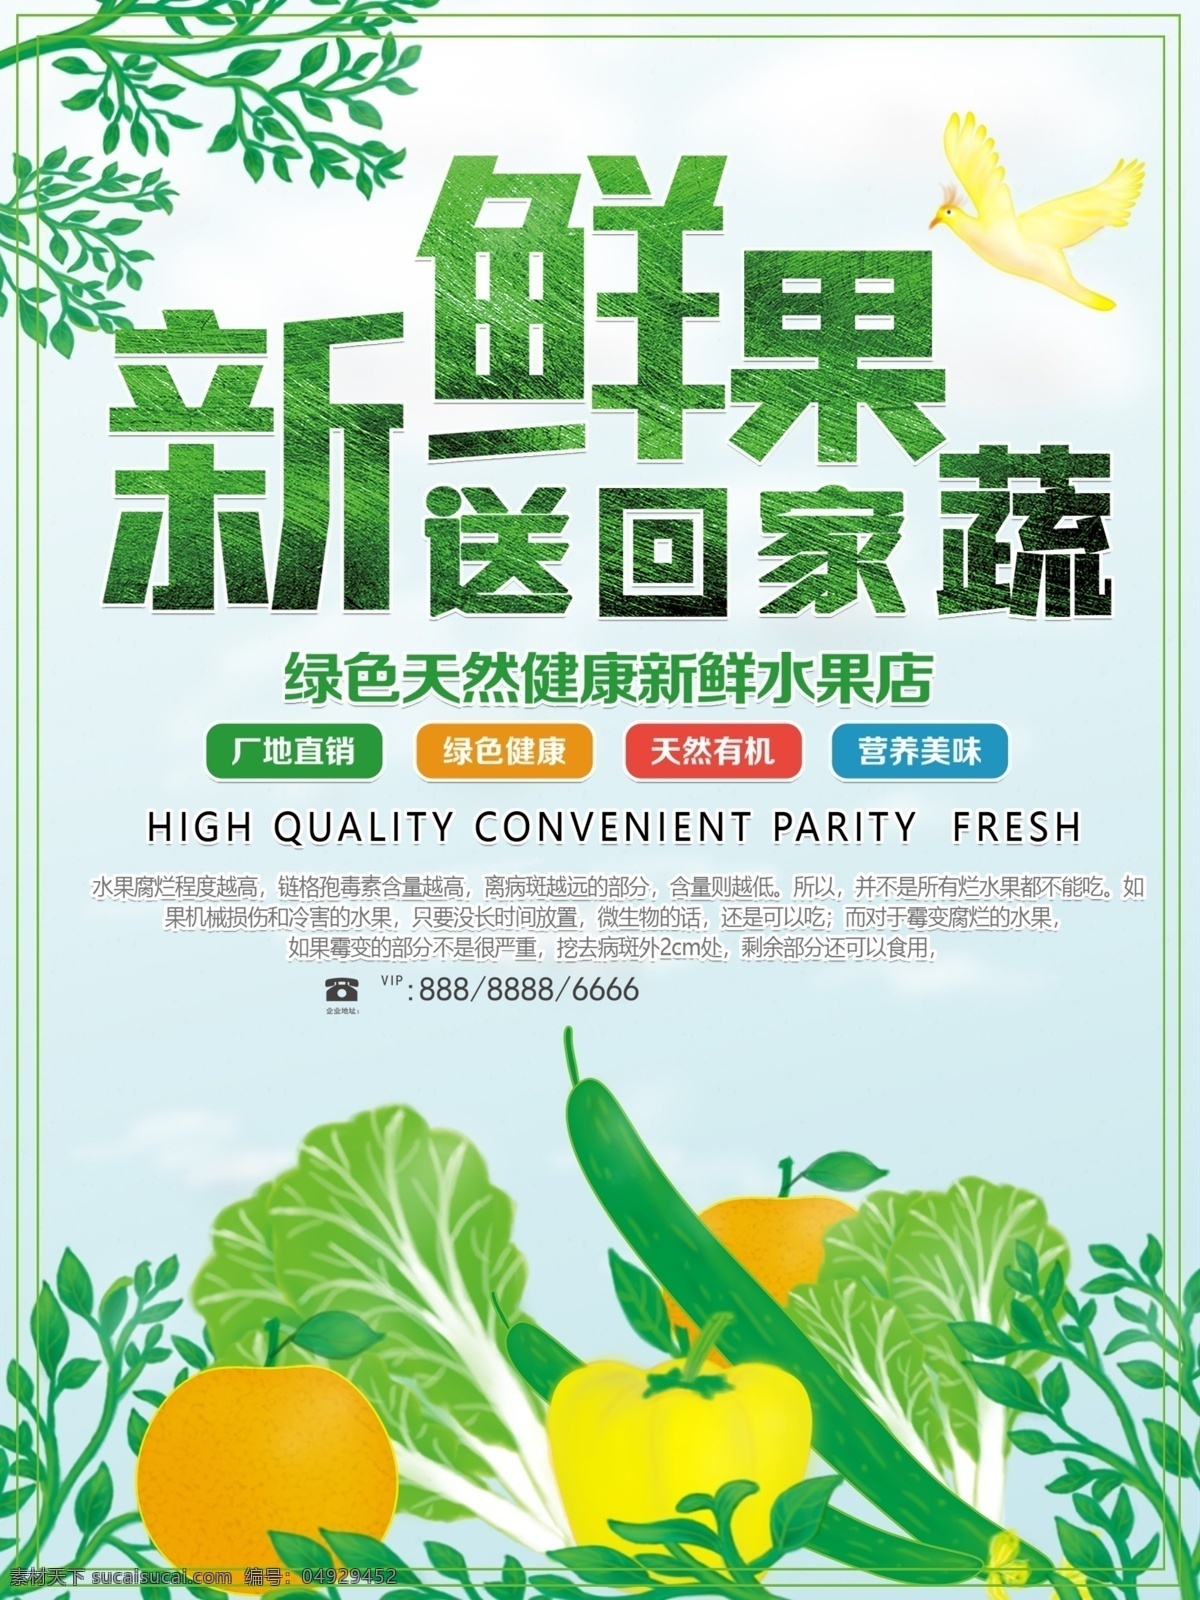 新鲜 蔬菜 超市 宣传海报 宣传 海报 新鲜蔬菜 超市海报 果蔬 外卖 配送 营养 健康 营养健康 绿色食品 环保 无污染 手绘 绘画 果蔬行业 分层